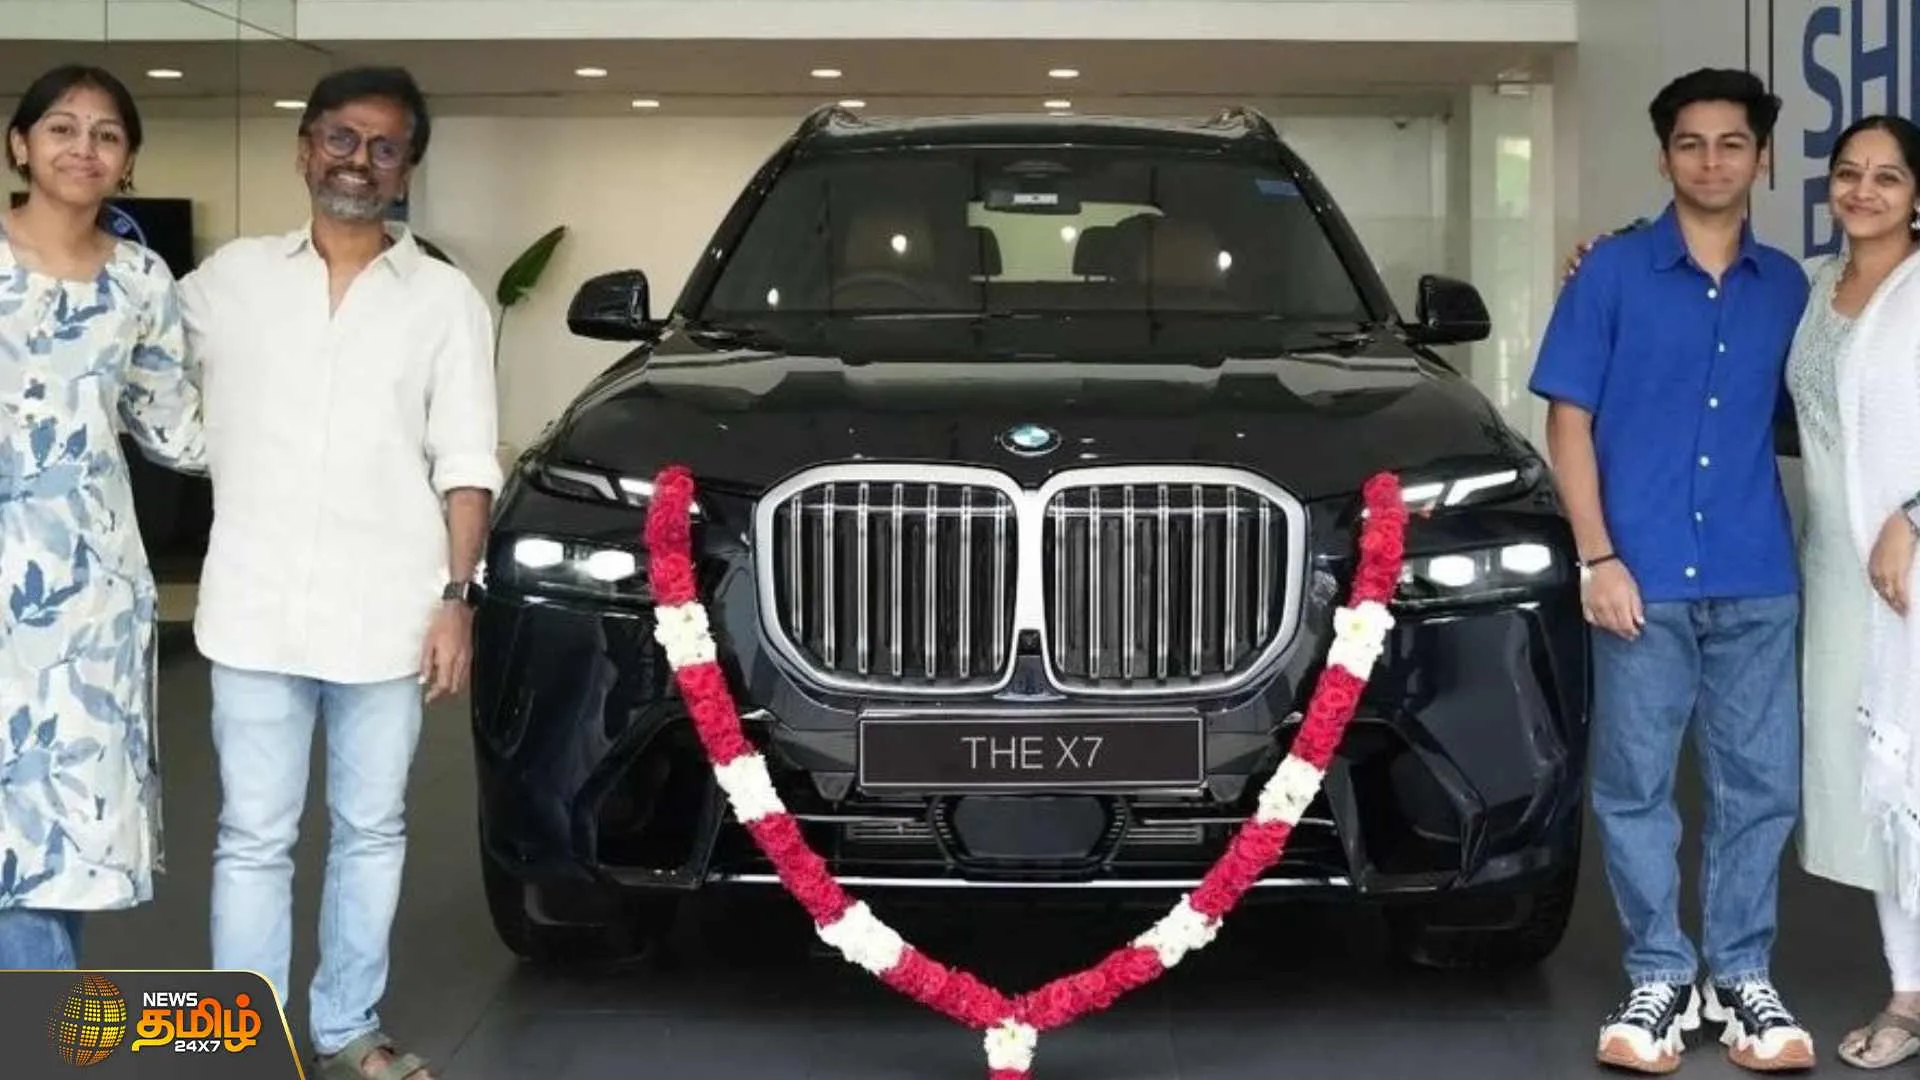 புதிய BMW X7 காரை வாங்கிய இயக்குனர் ஏ.ஆர்.முருகதாஸ்  கார் முன்பு குடும்பத்துடன் எடுத்த புகைப்படம் வெளியீடு